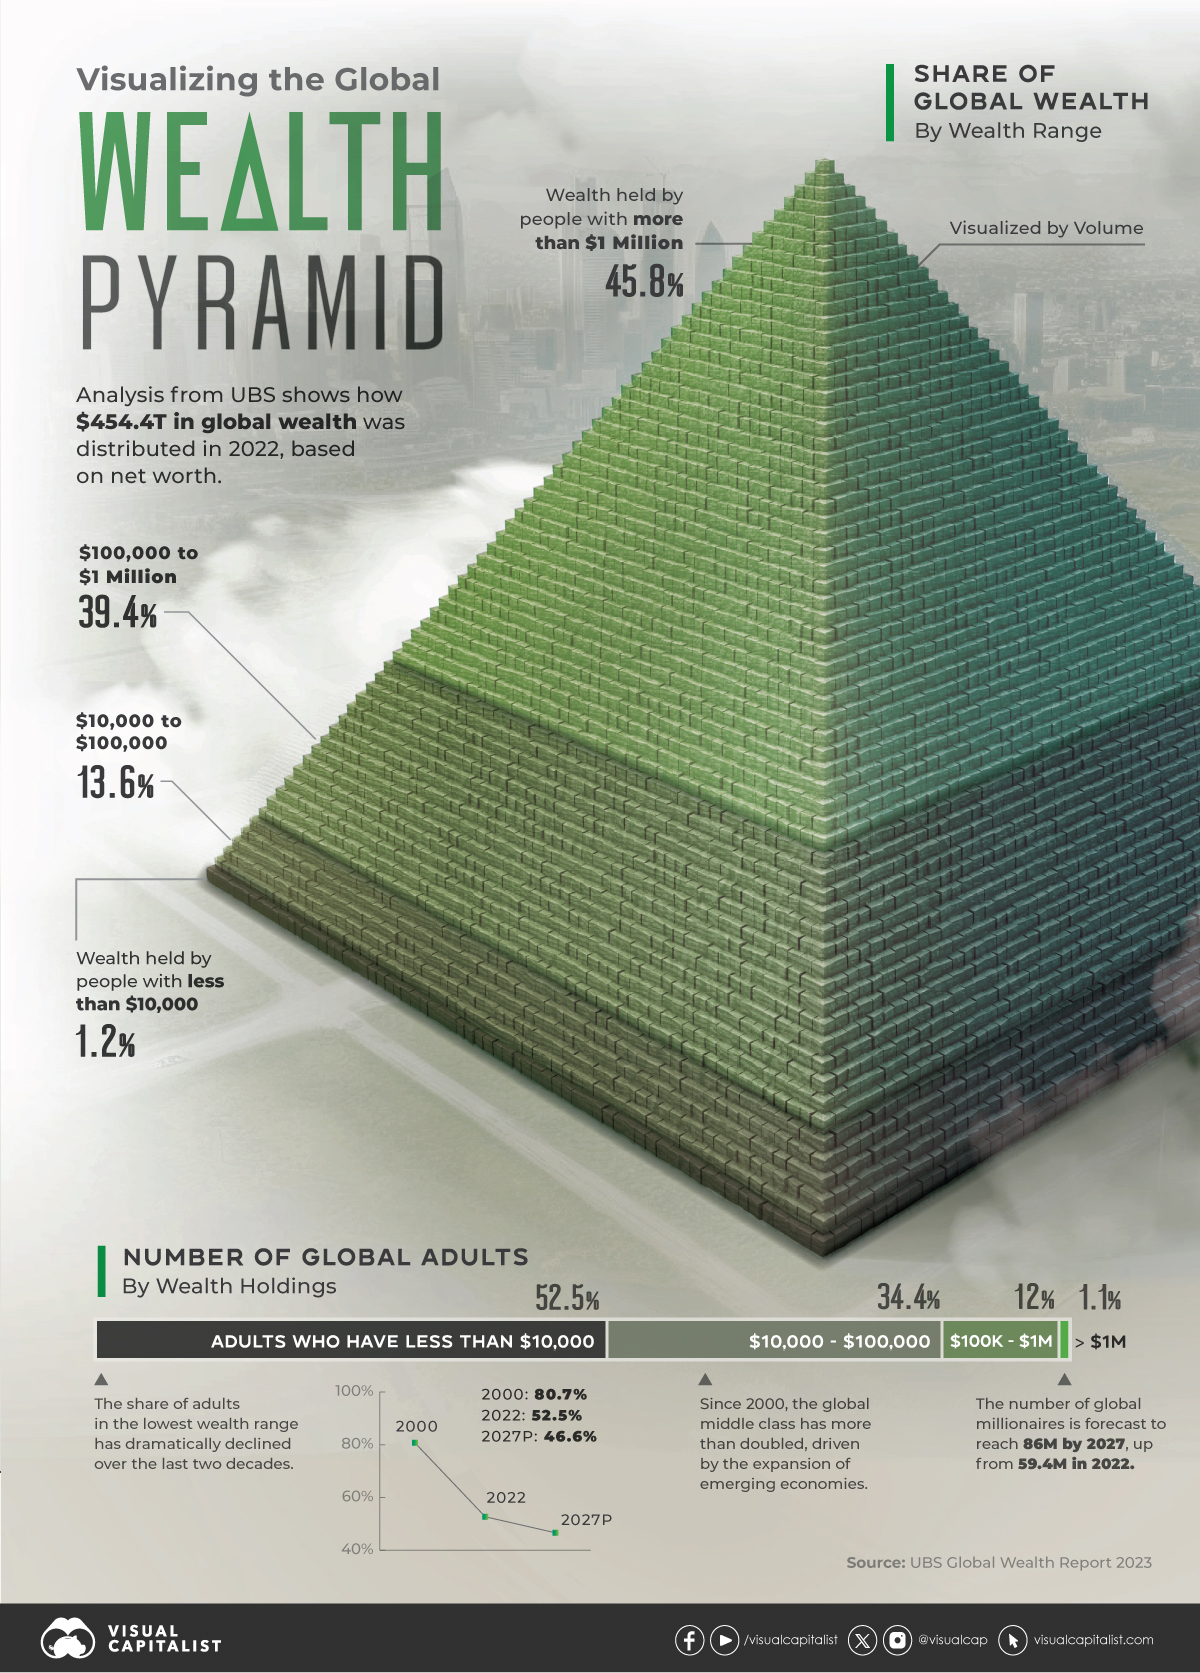 Global wealth distribution pyramid